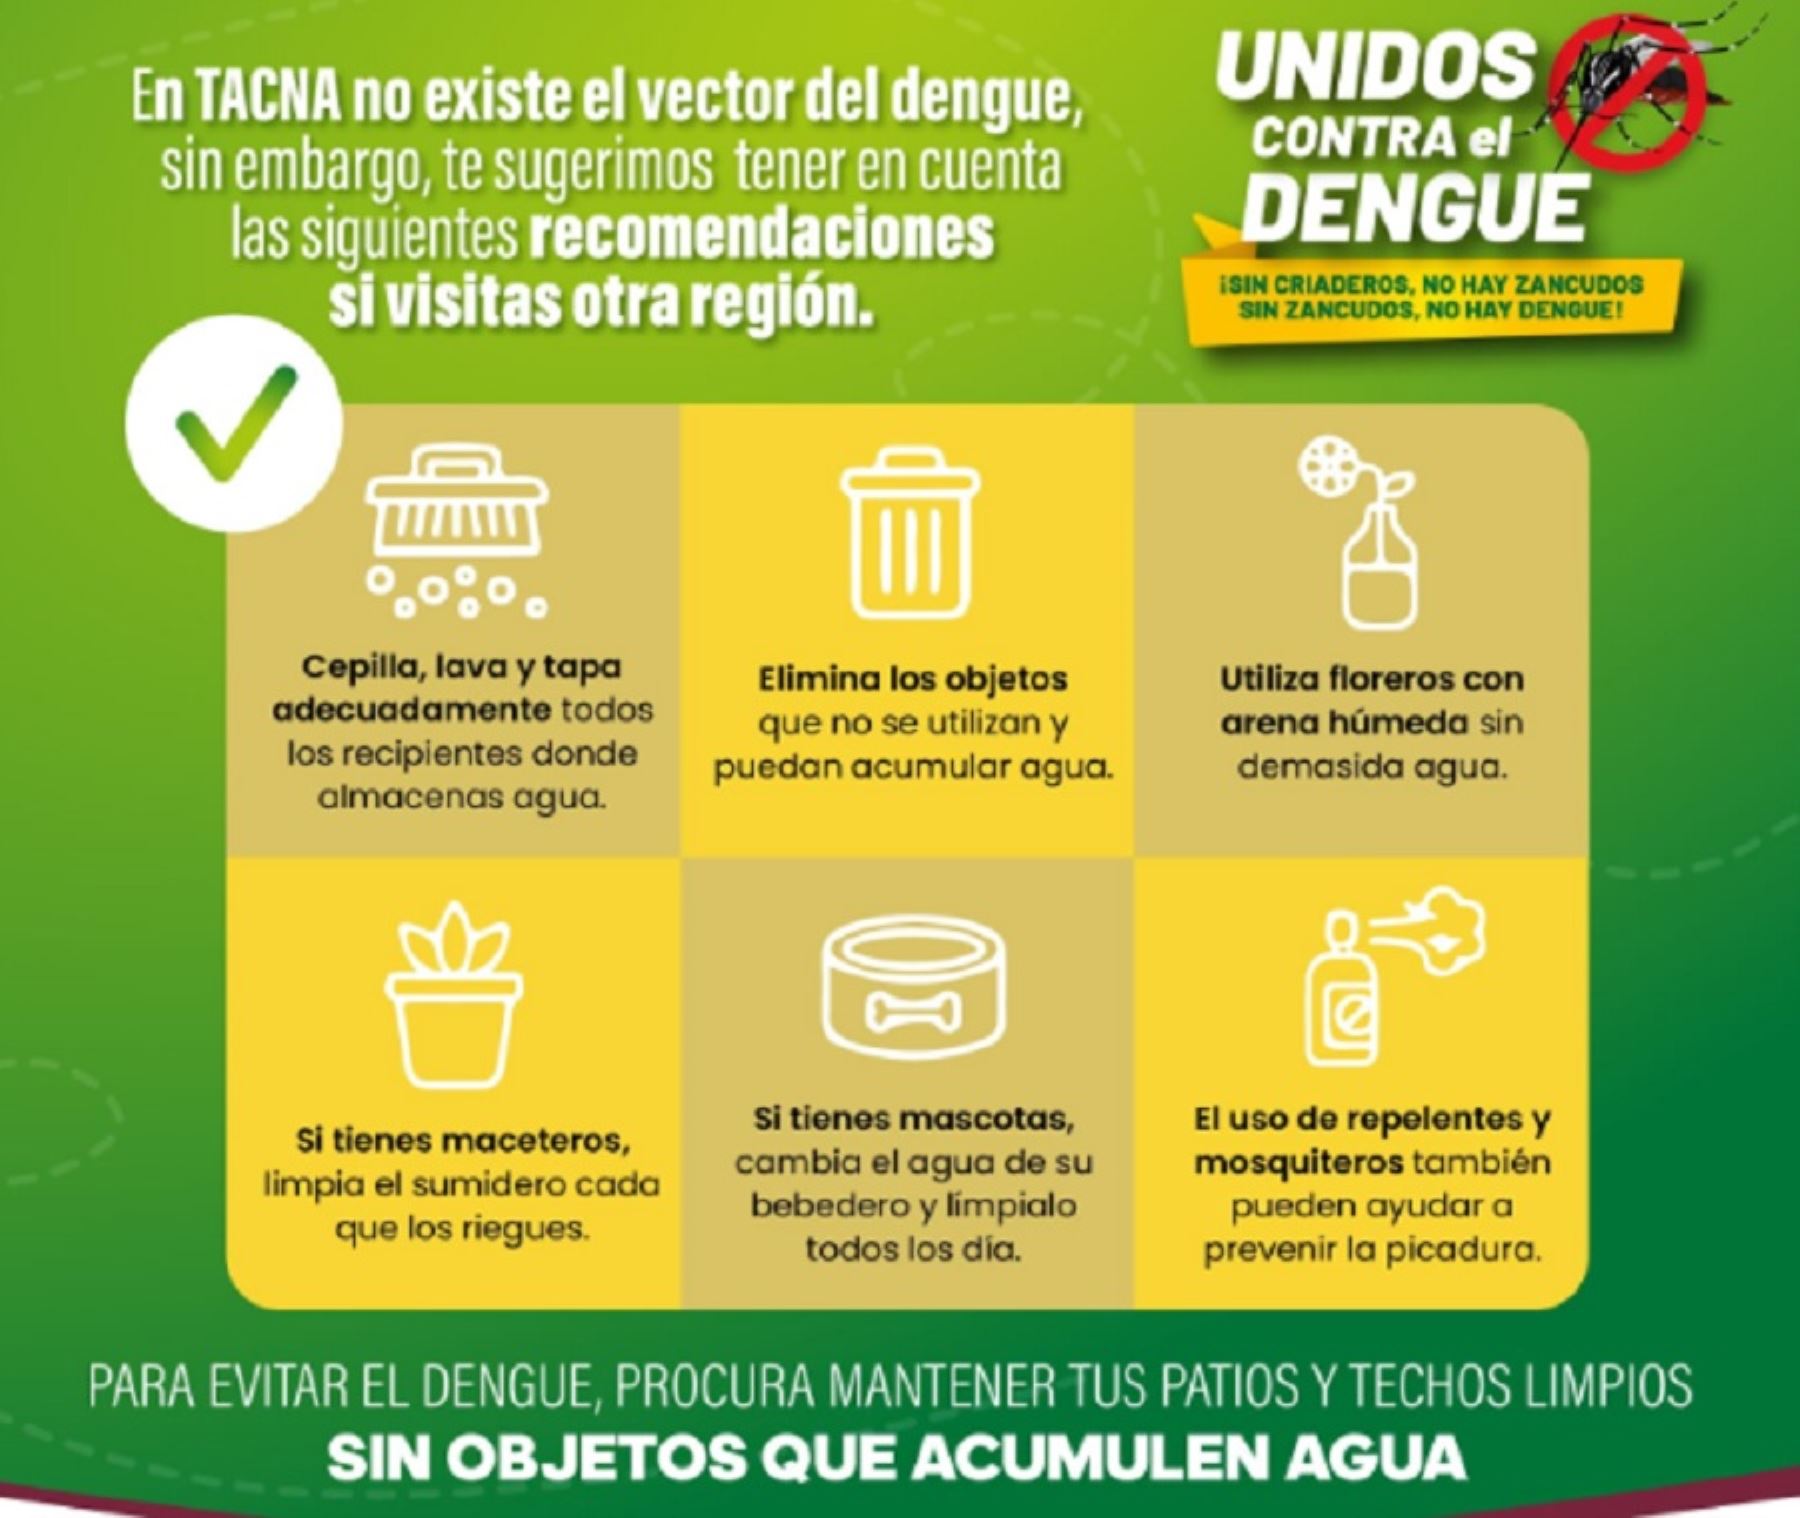 Medidas sanitarias para prevenir el dengue dispuestas por la Dirección Regional de Salud de Tacna.